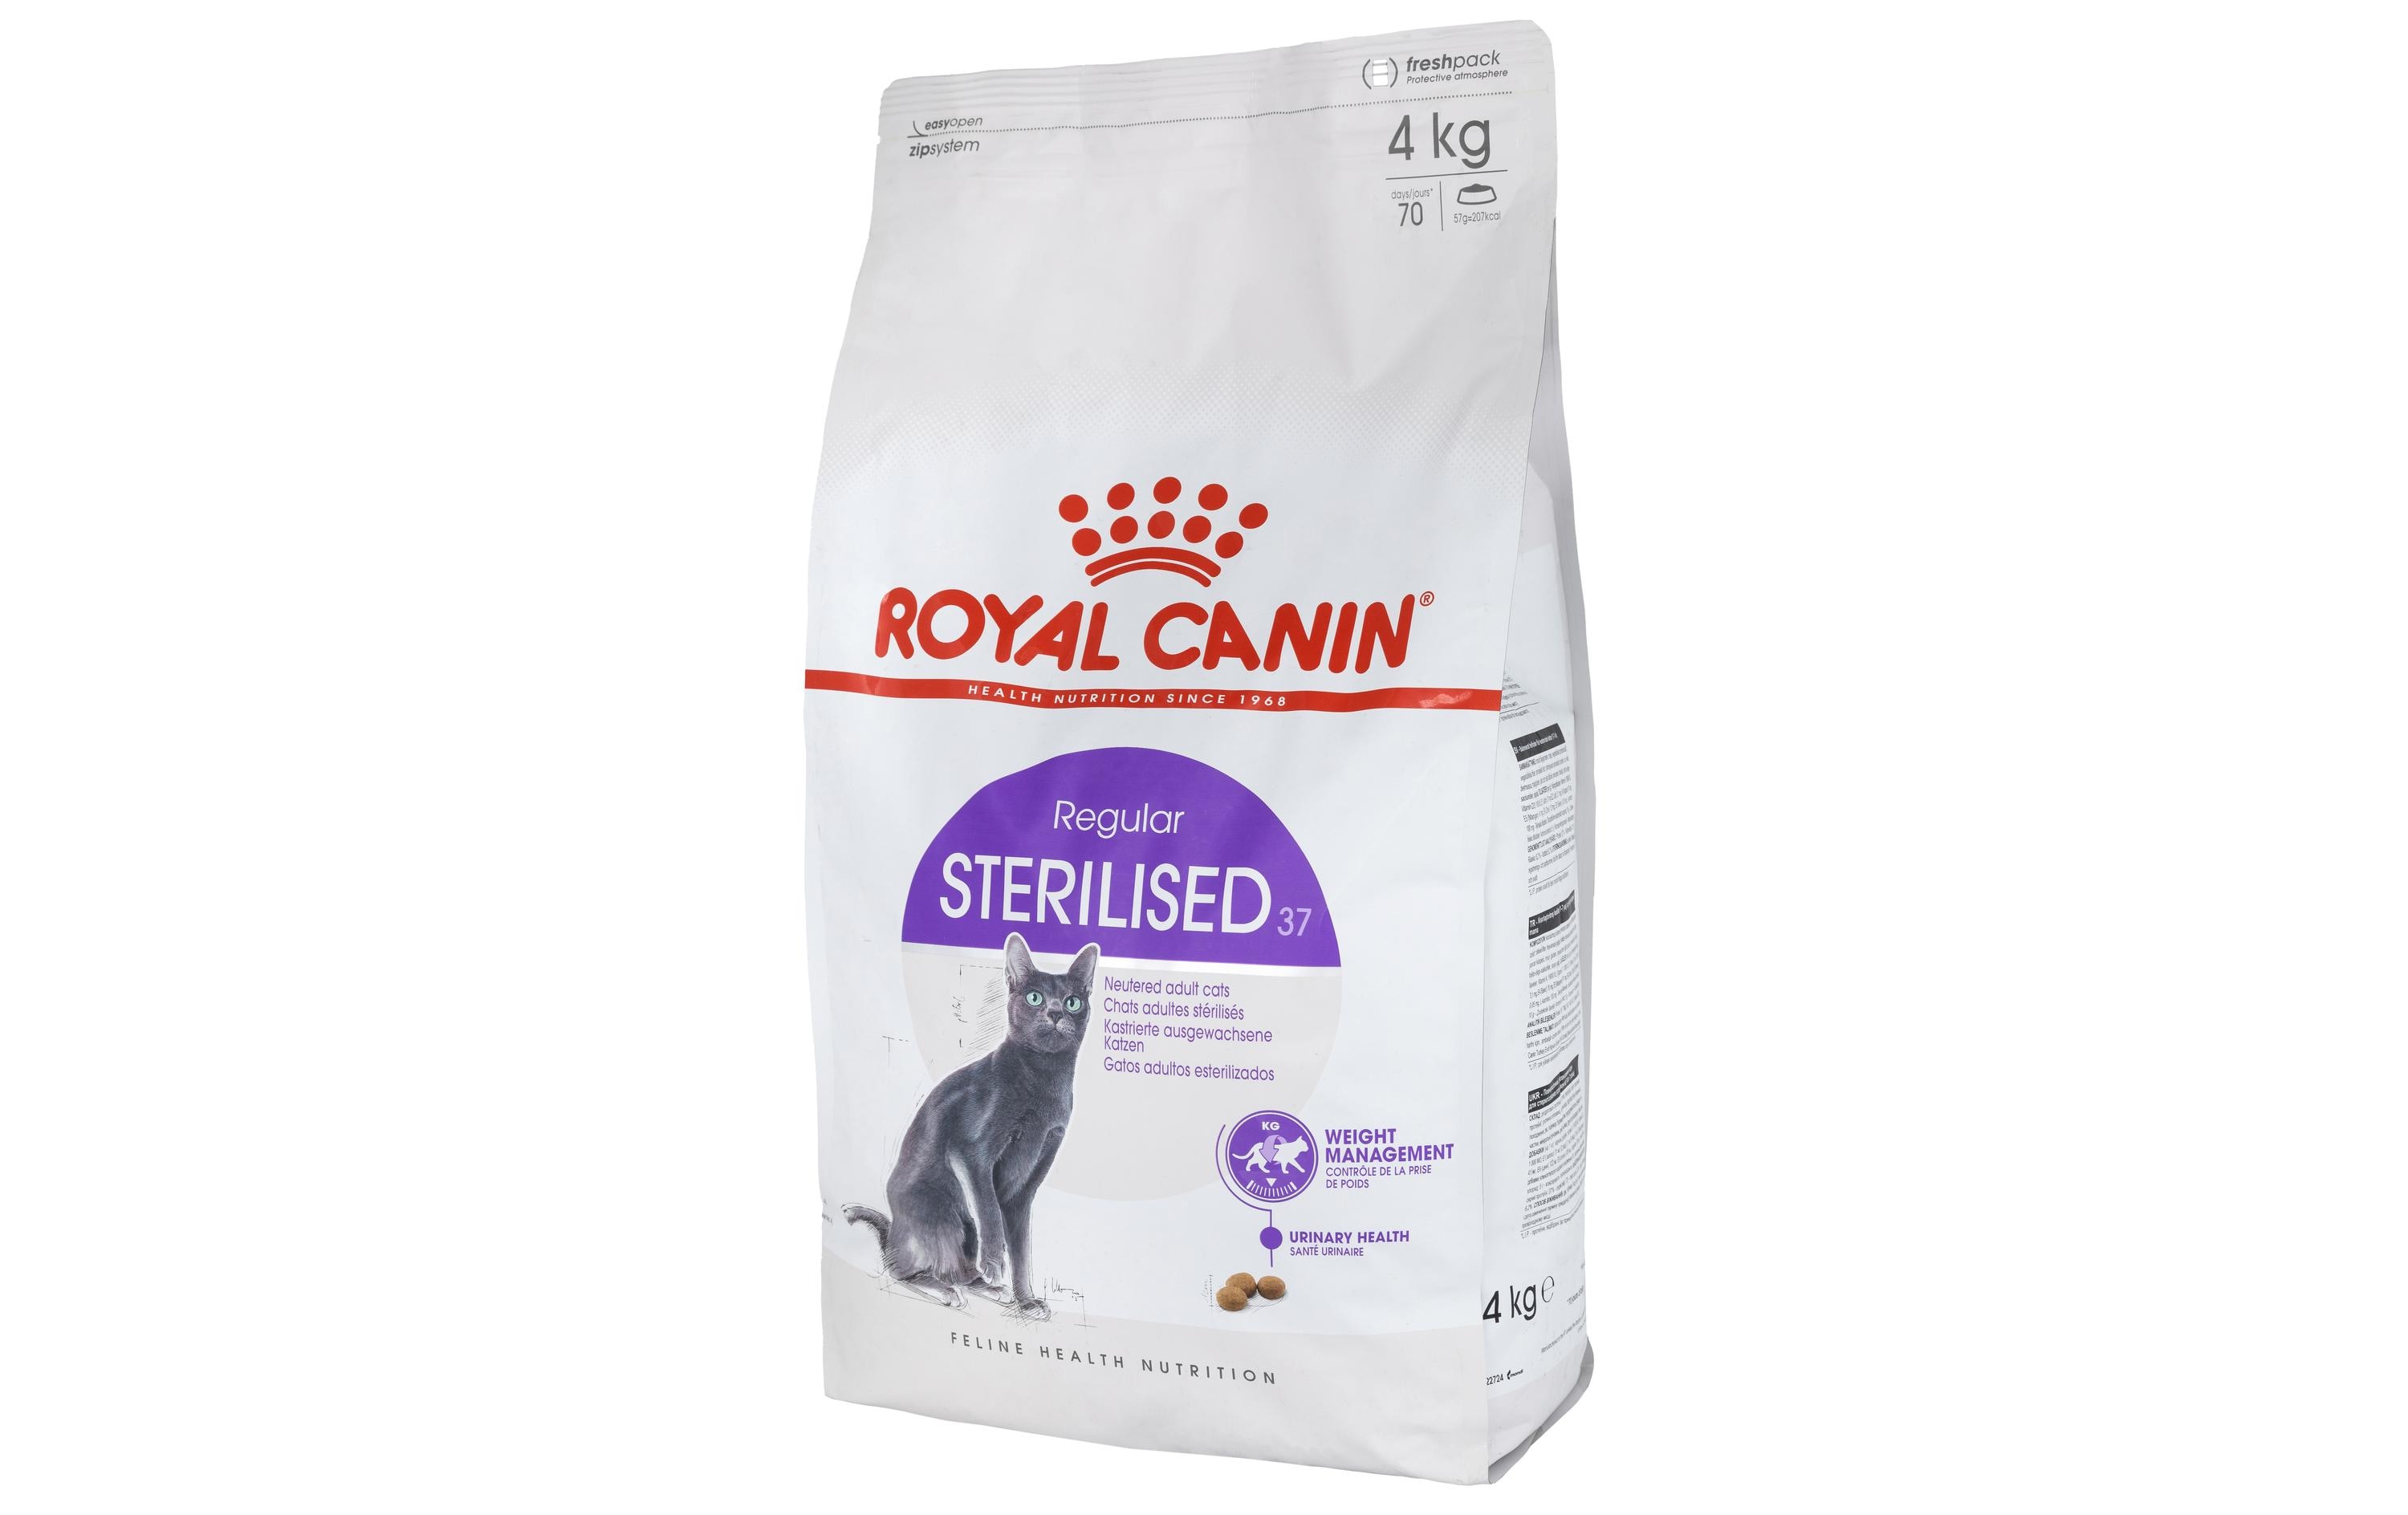 Royal Canin Trockenfutter Sterilised 37, 4 kg